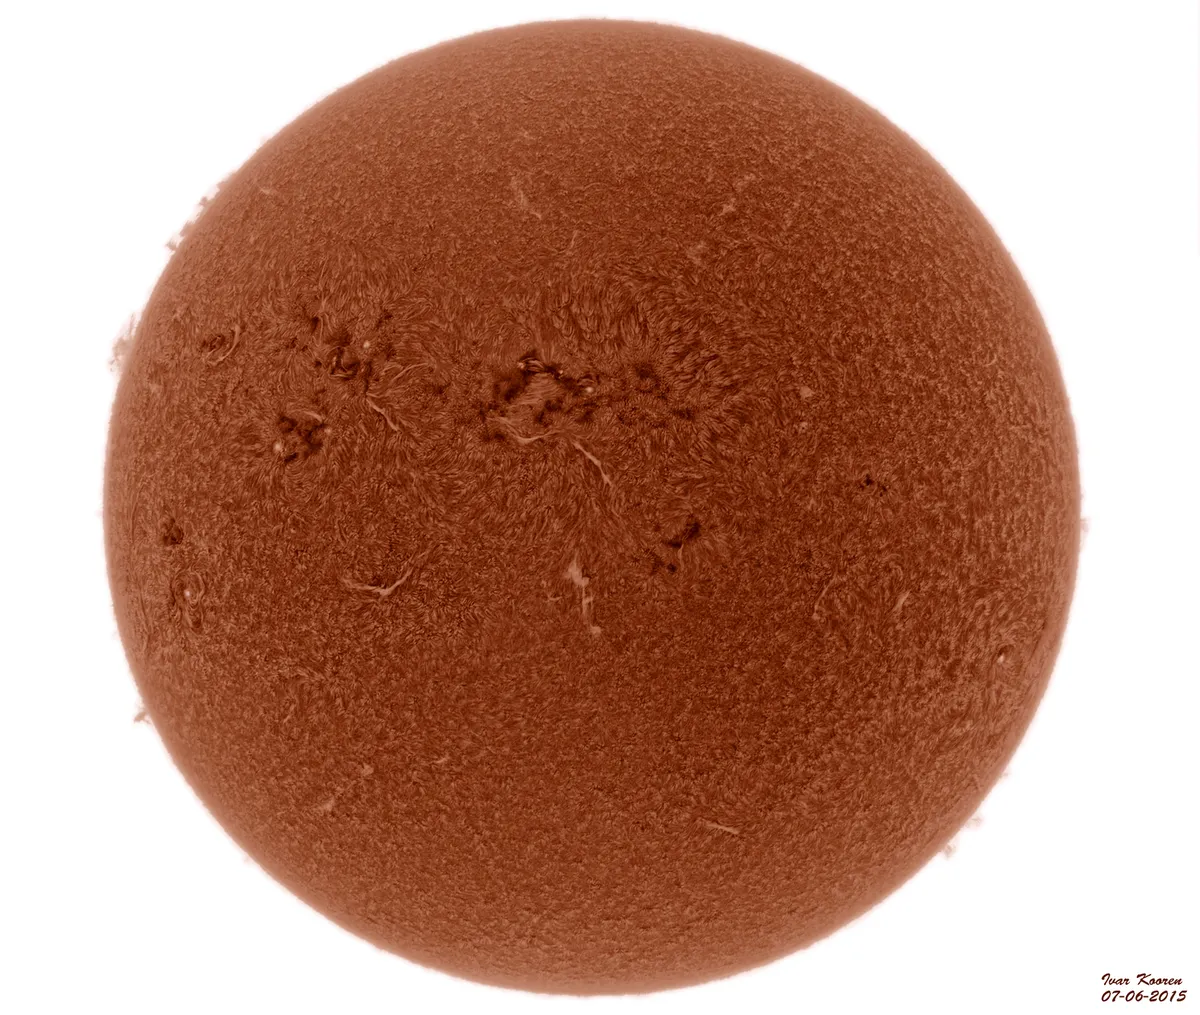 The Sun 07-06-2015 by Ivar Kooren, Heenvliet, The Netherlands. Equipment: Solarmax60S, ZWO ASI174mm.